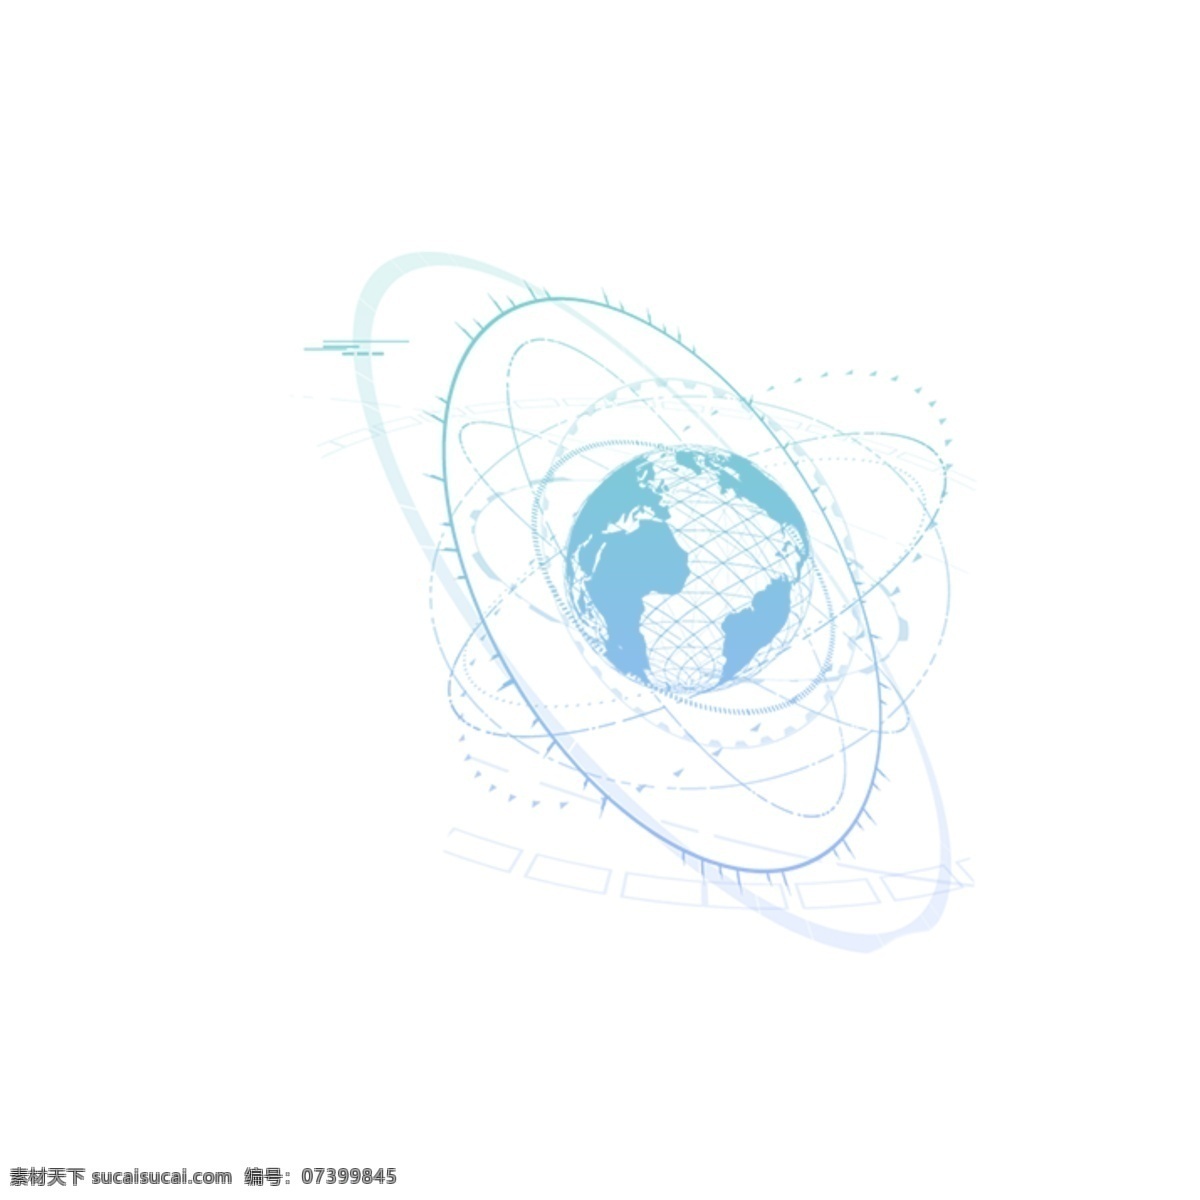 简约 立体 蓝色 地球 卡通手绘 装饰 商务 创新 几何图形 圆圈 高科技 创意 抽象 不规则图形